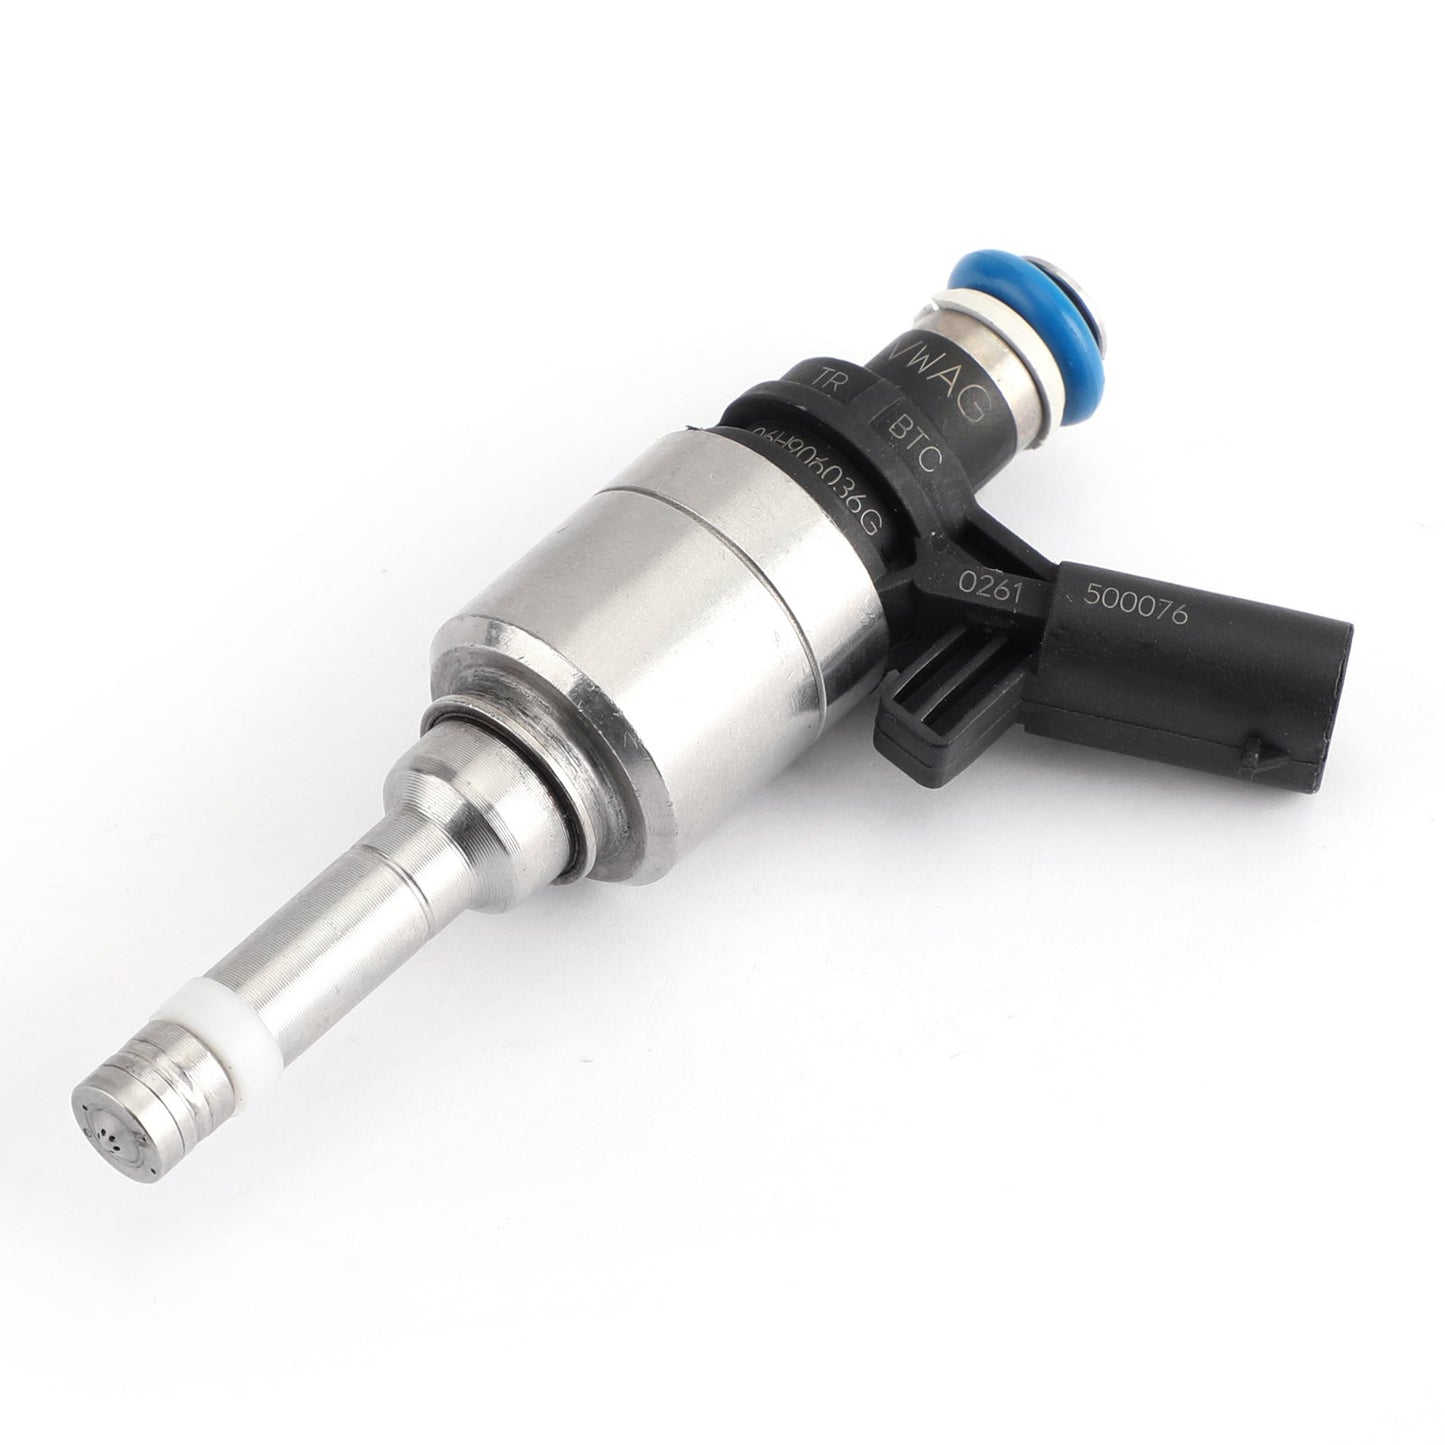 1x Fuel Injectors For Audi A4 A3 A5 TT VW T5 Eos CC 2.0L Turbo 0261500076